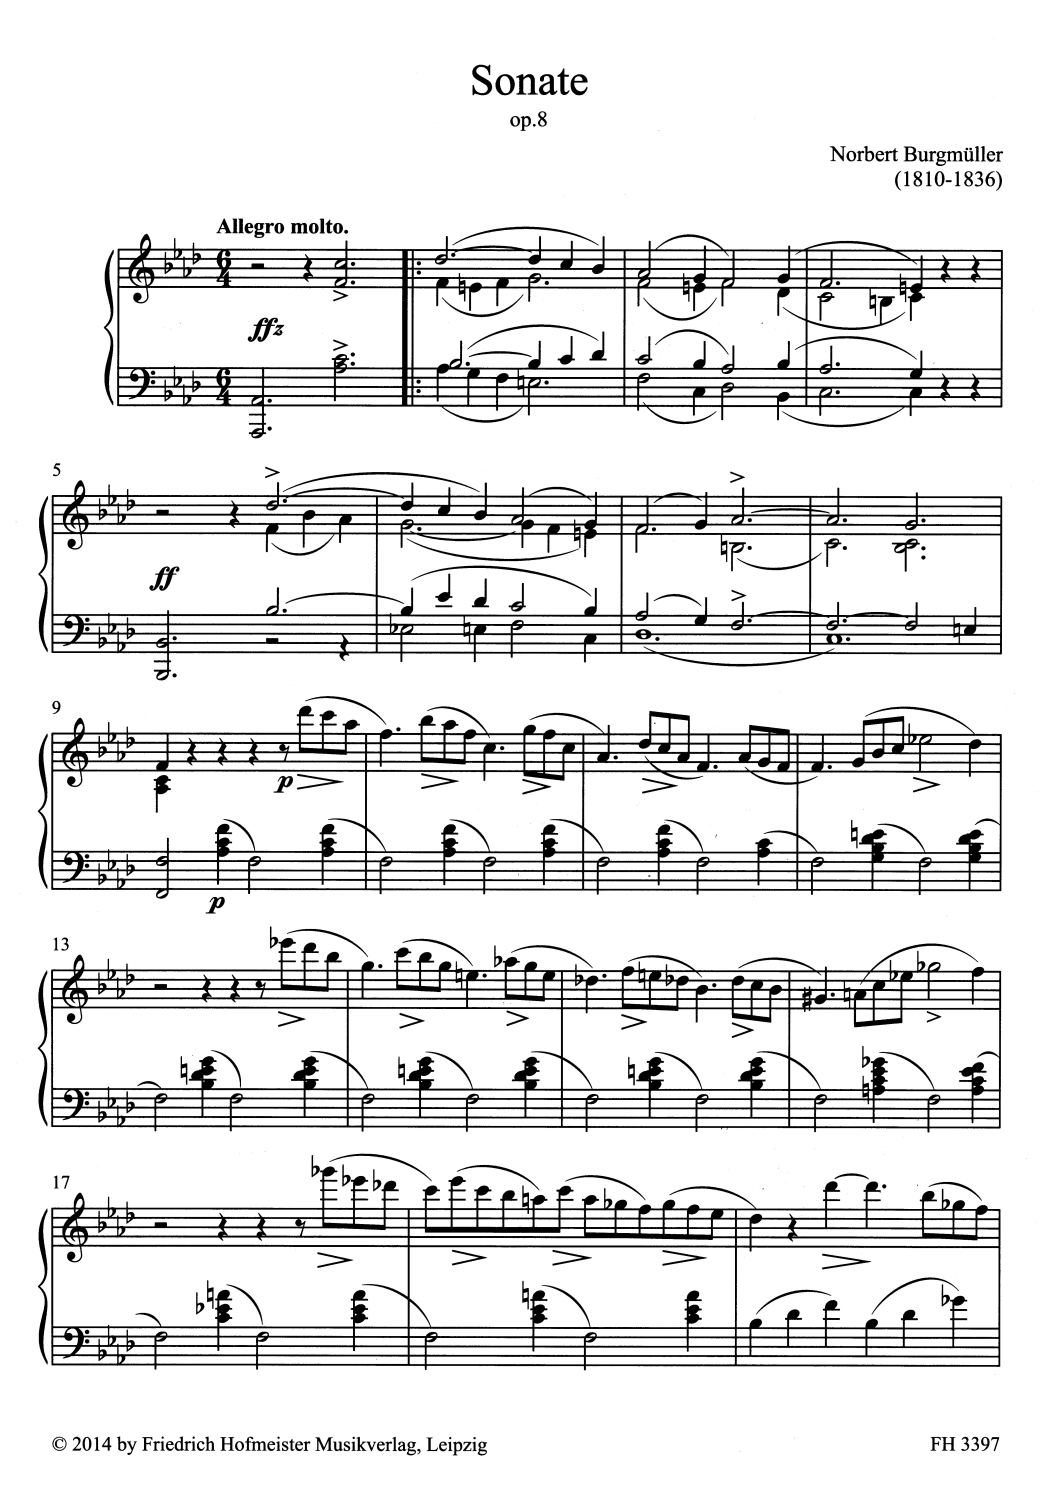 Norbert-Burgmueller-Sonate-op-8-Pno-_0006.JPG